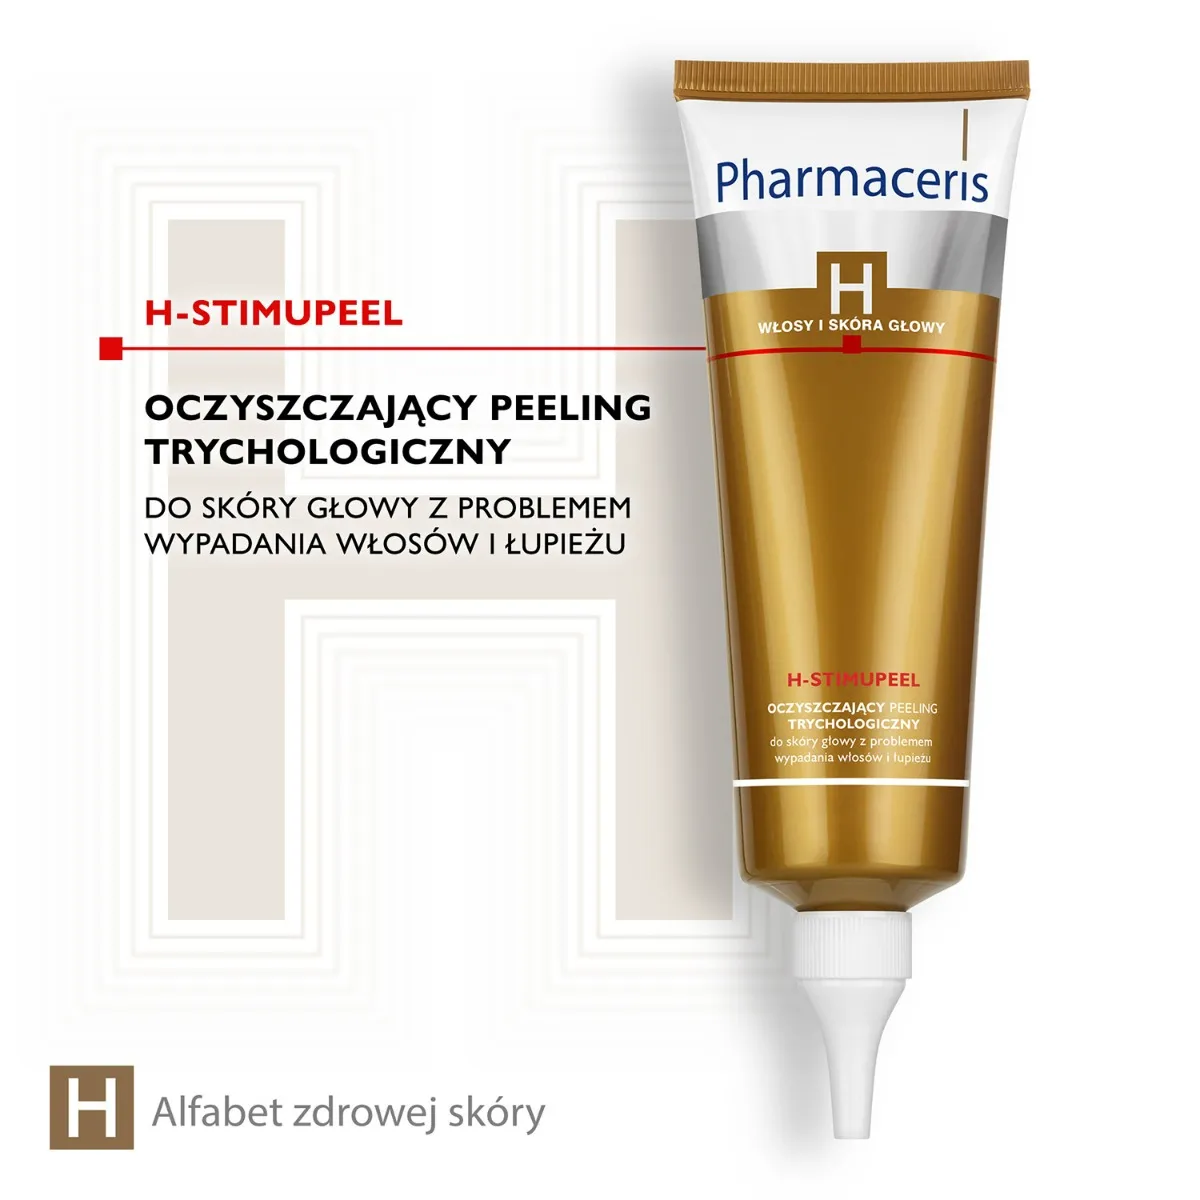 Pharmaceris H Stimupeel, oczyszczający peeling trychologiczny, 125 ml 